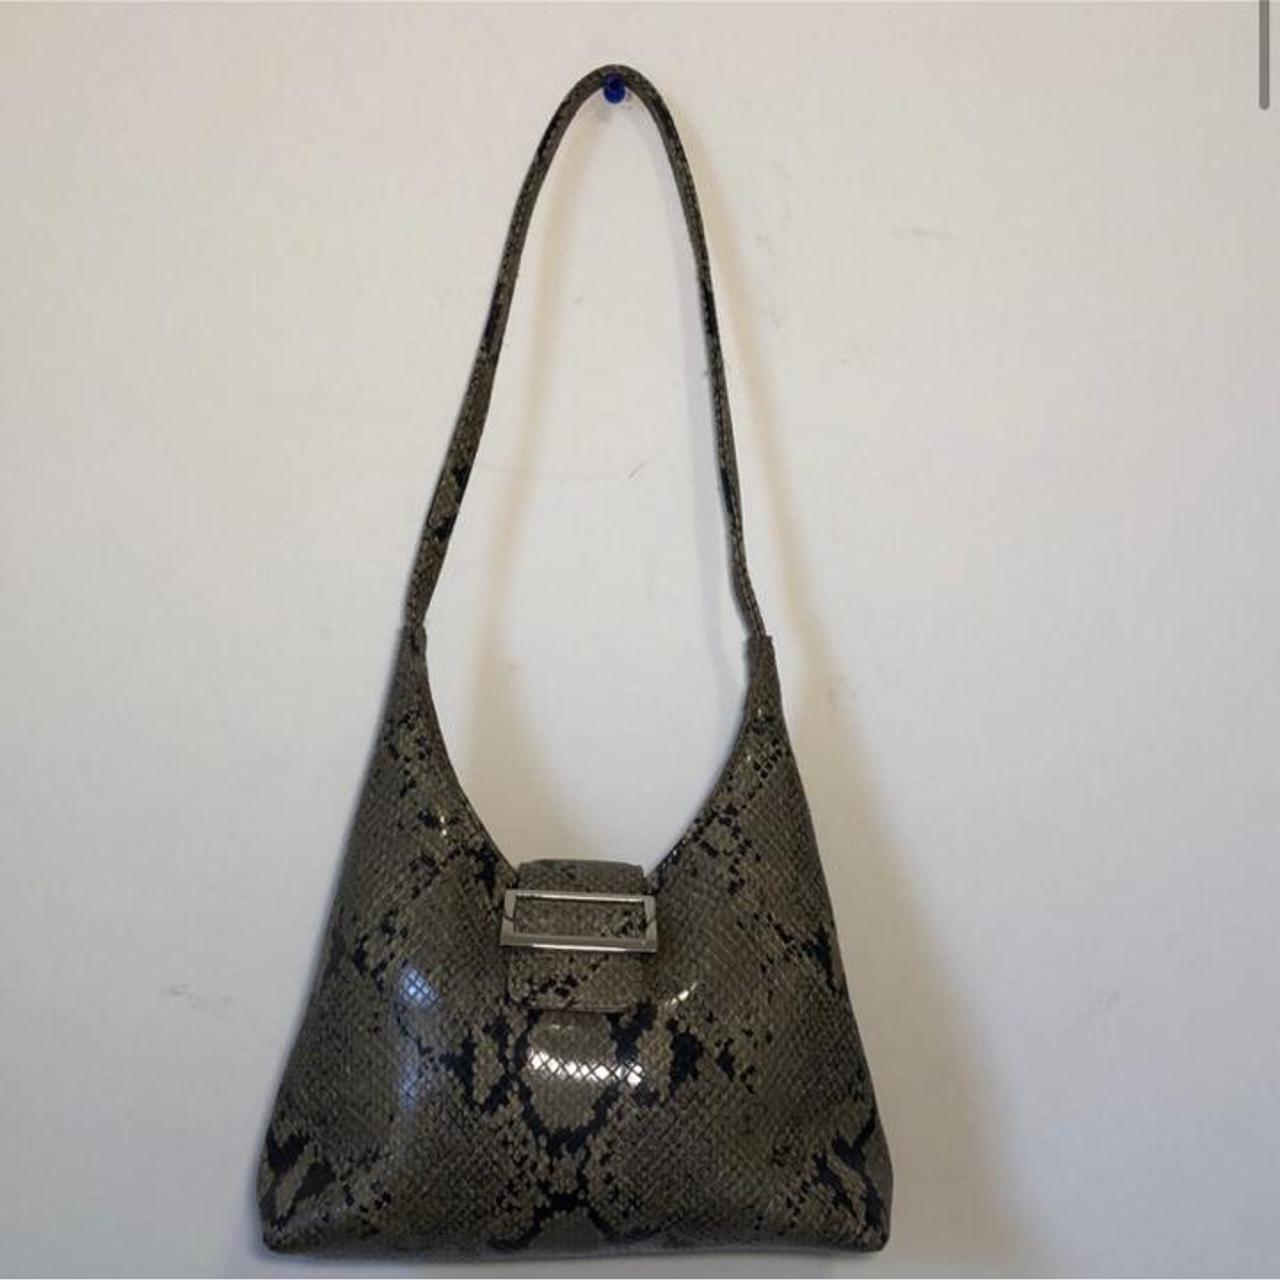 Vintage 90s mini buckle shoulder purse in snakeskin... - Depop